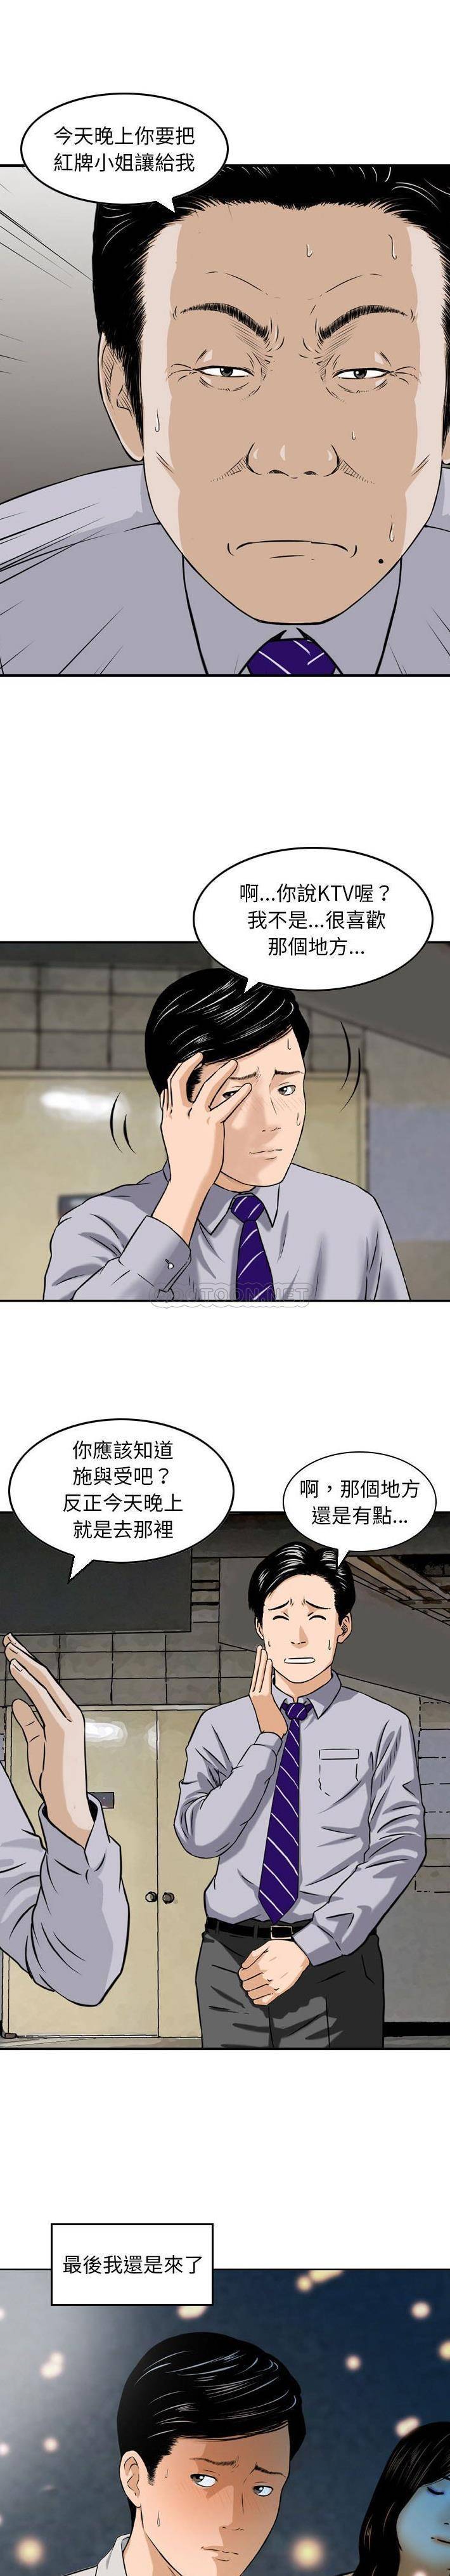 韩国污漫画 金錢的魅力 第4话 10